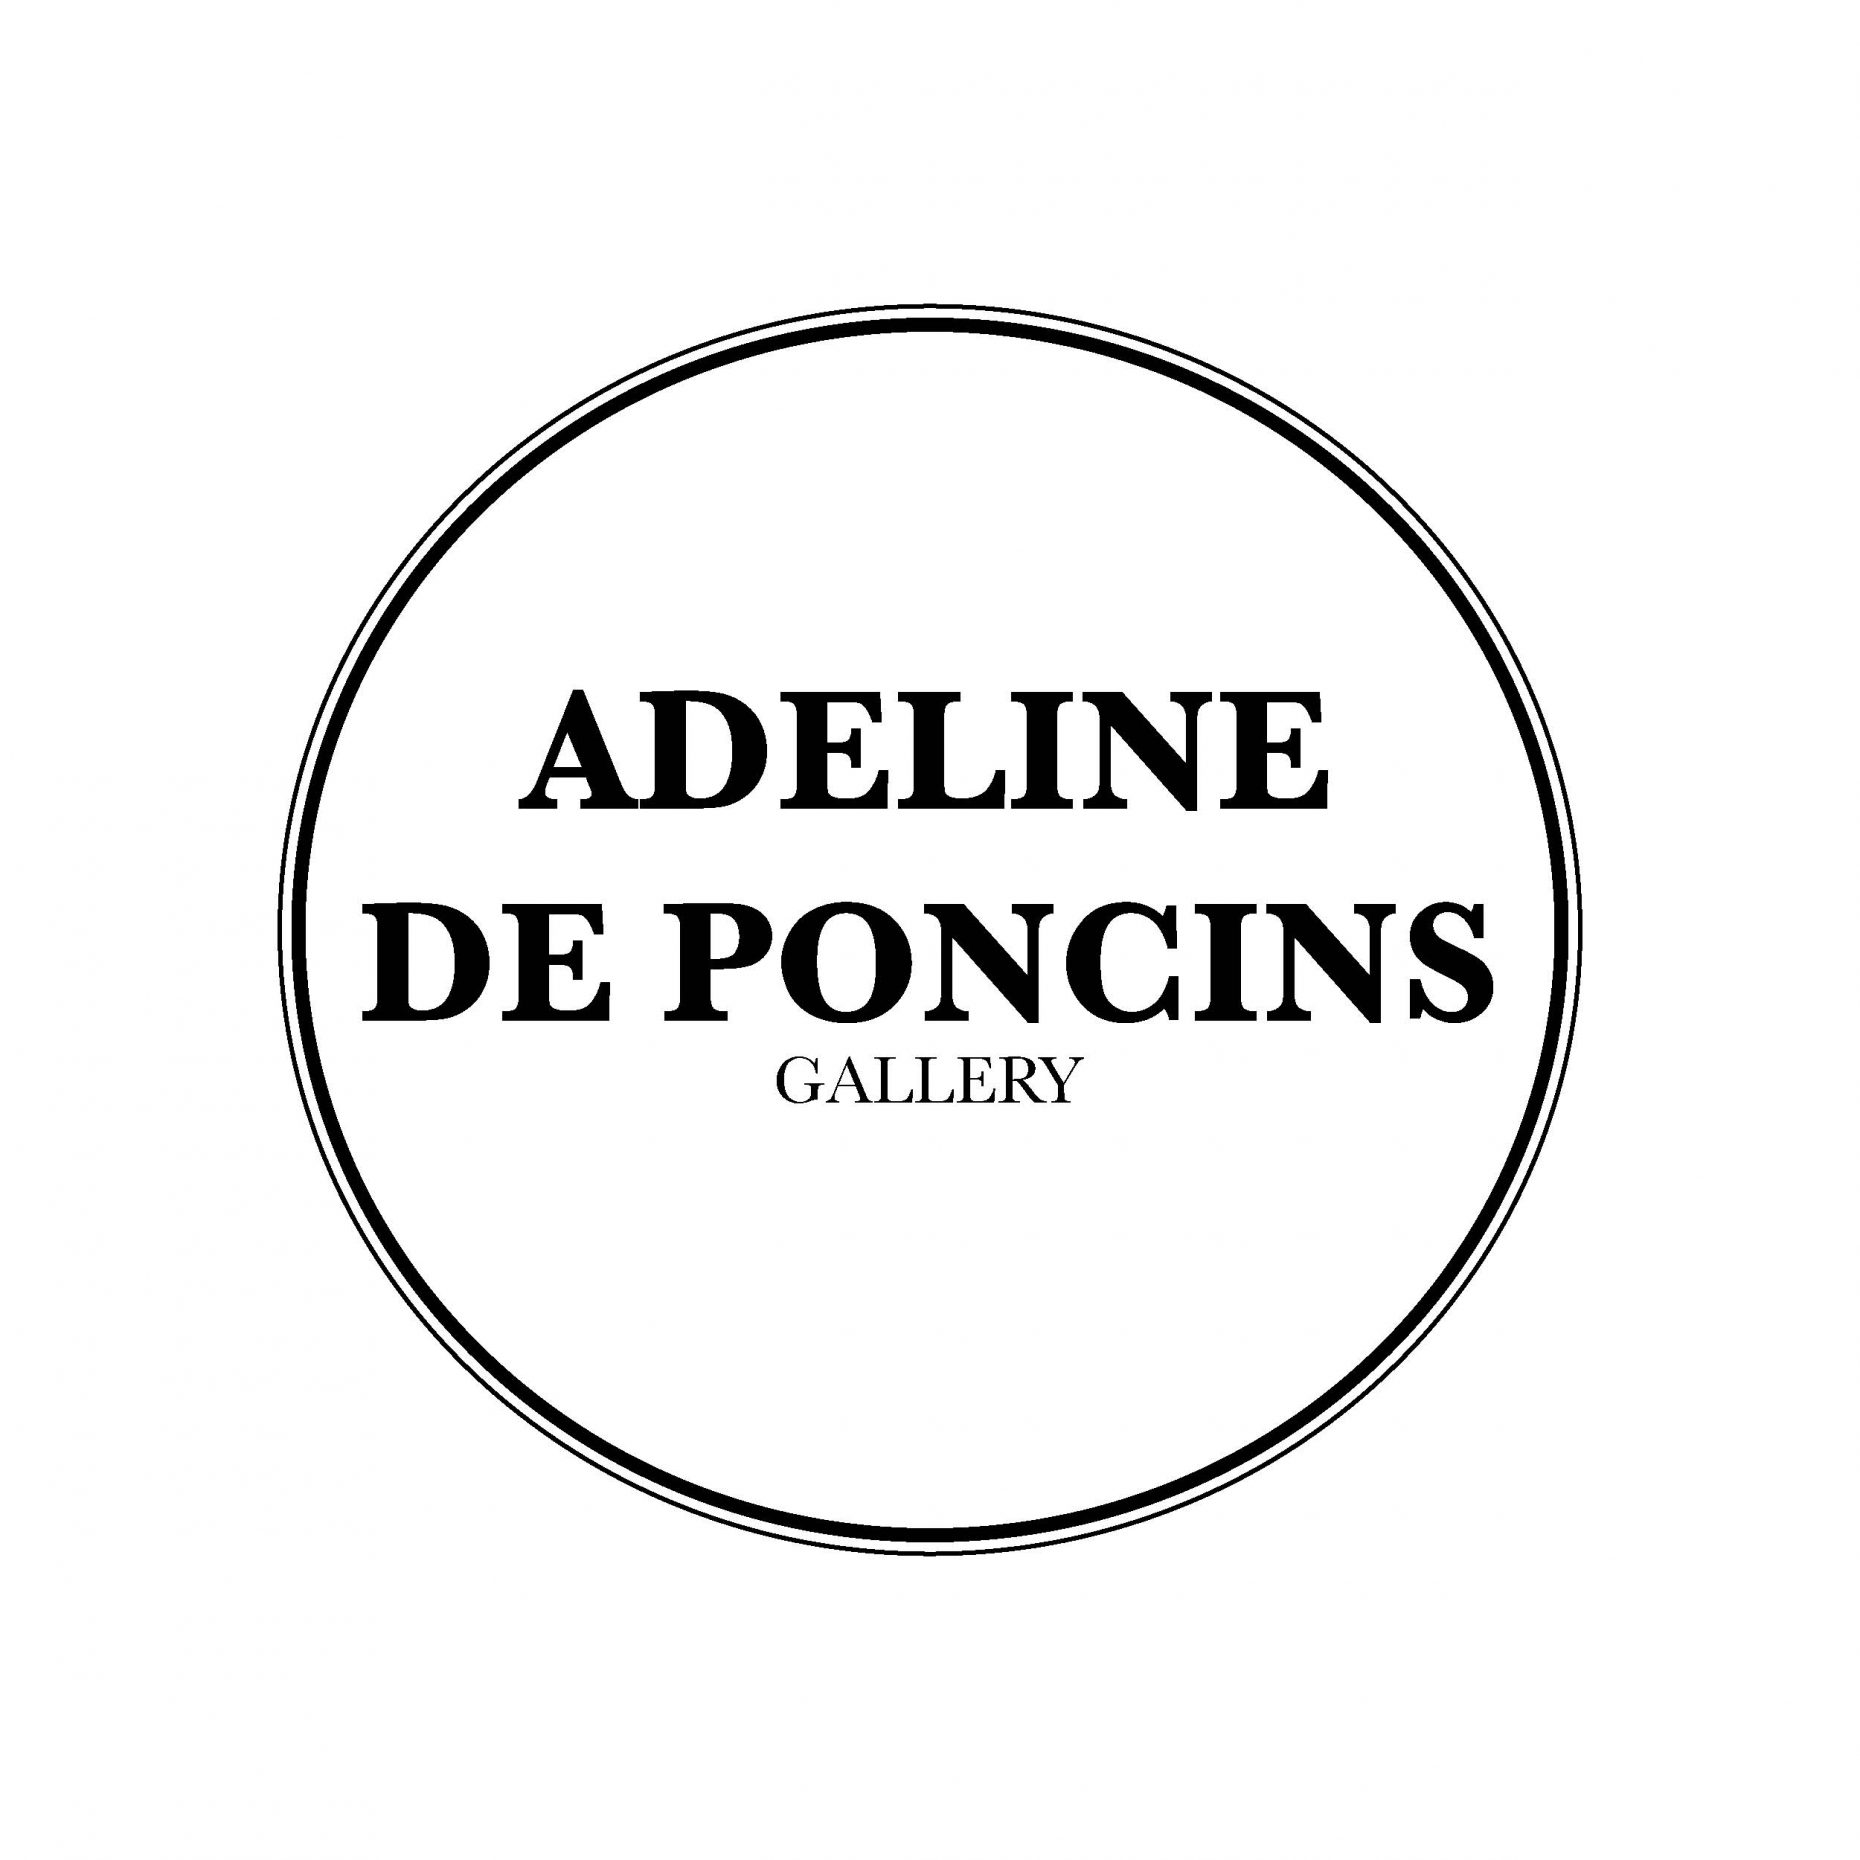 Adeline de Poncins Gallery